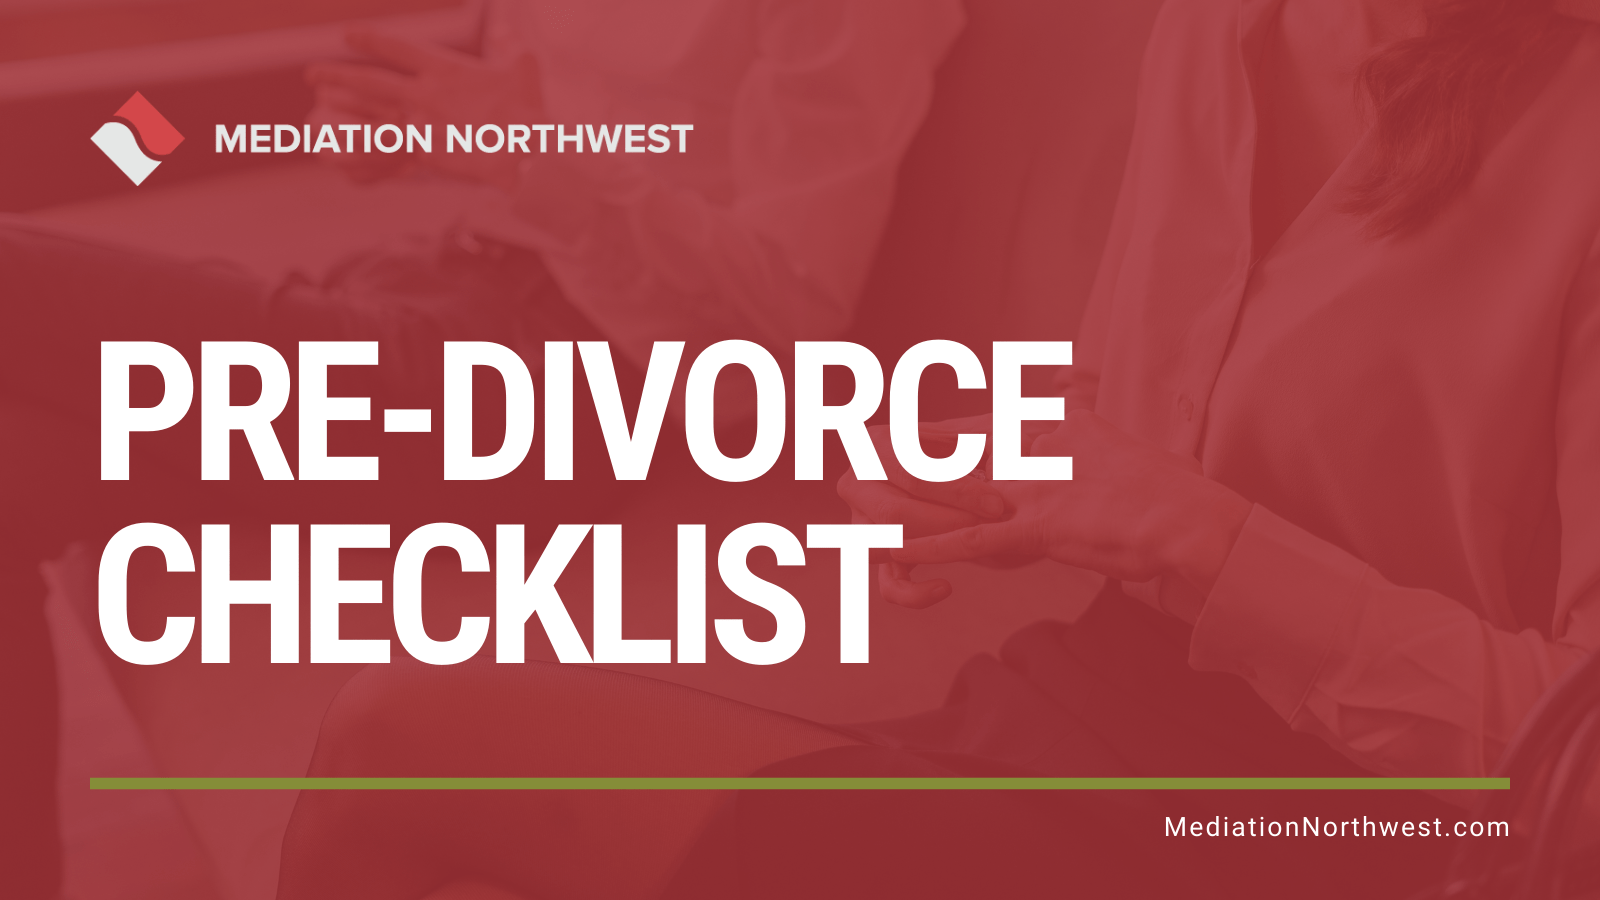 Pre-Divorce Checklist - Julie Gentil - eugene oregon divorce mediation